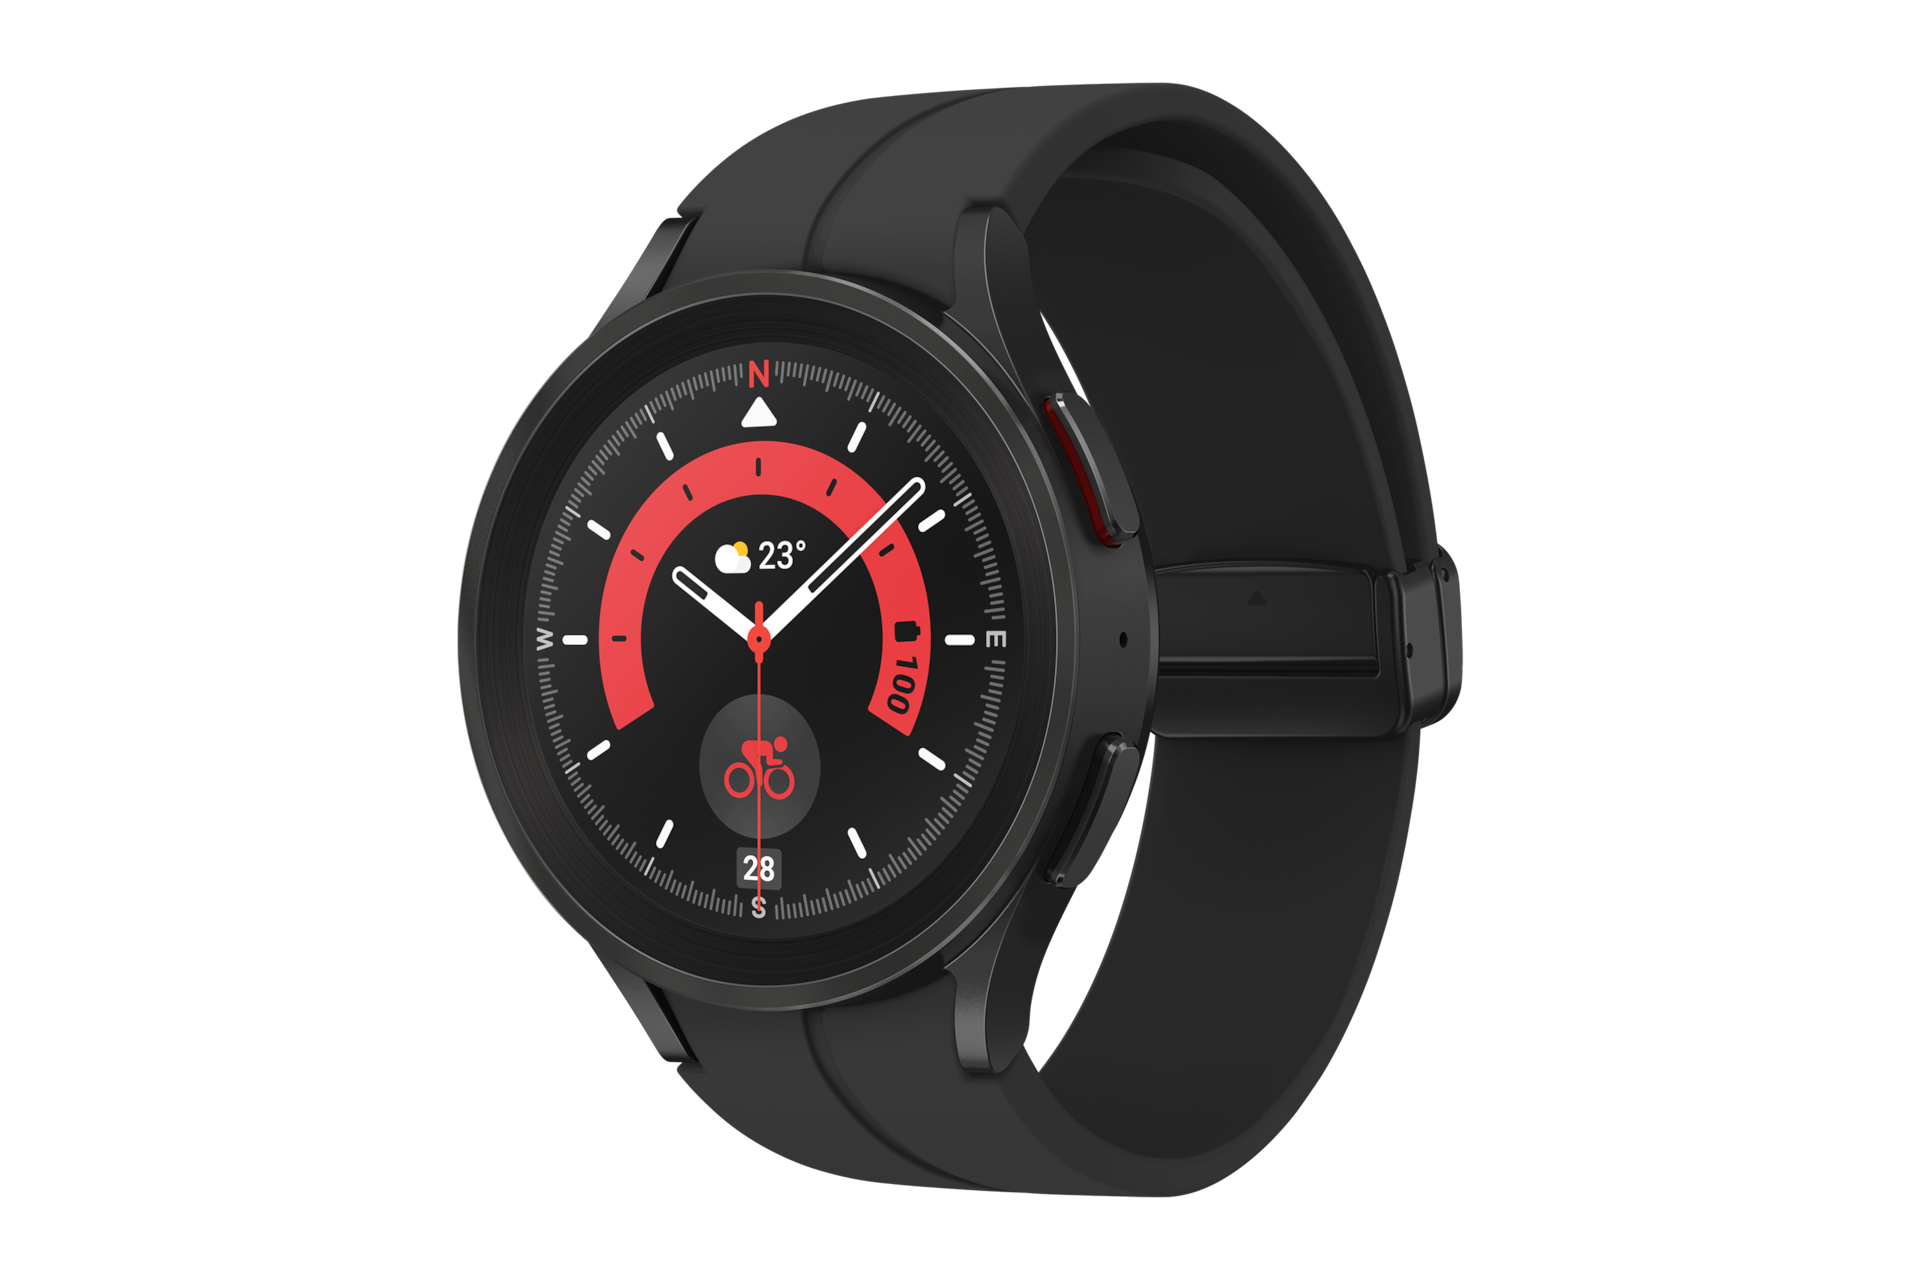 Xem chi tiết mặt nghiêng phải Samsung Watch 5 Pro LTE (SM-R925FZKAXXV) kích thước 45mm, với mặt đồng hồ nam tính & dây đeo màu đen sang trọng!